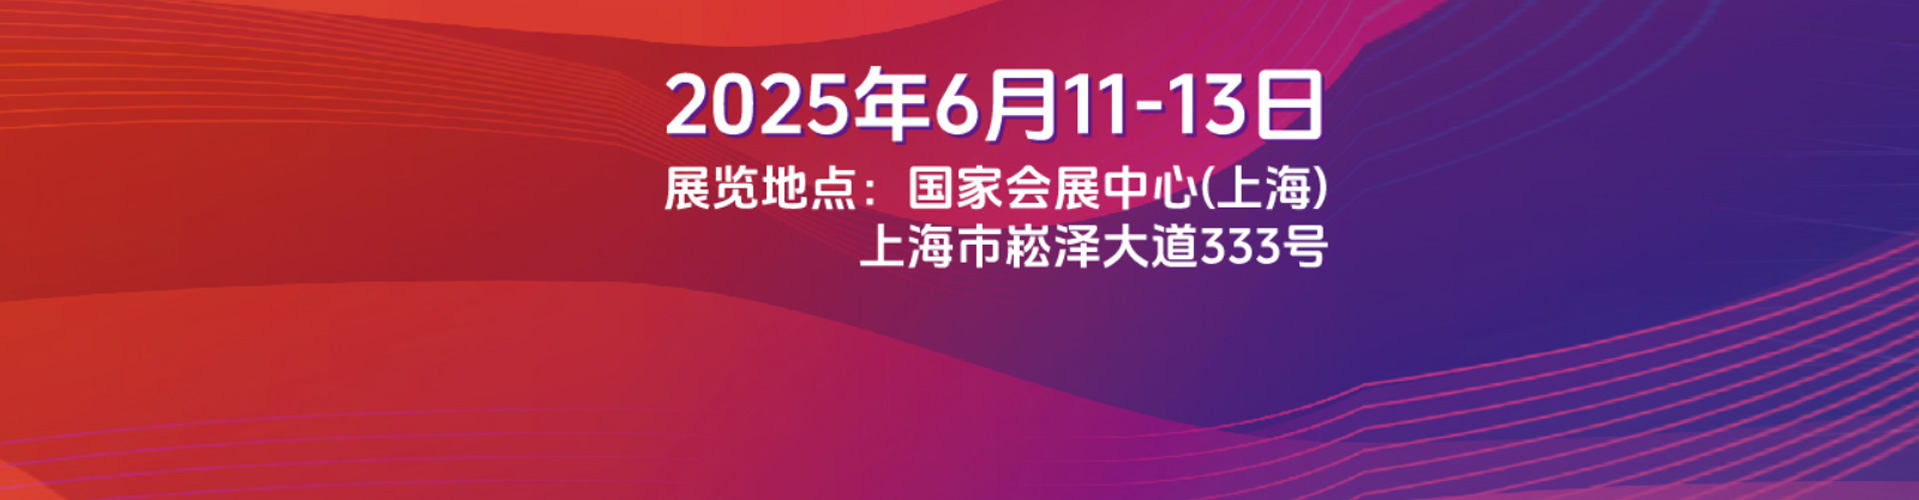 SNEC*十四届2020国际太阳能光伏与智慧能源上海展览会暨论坛